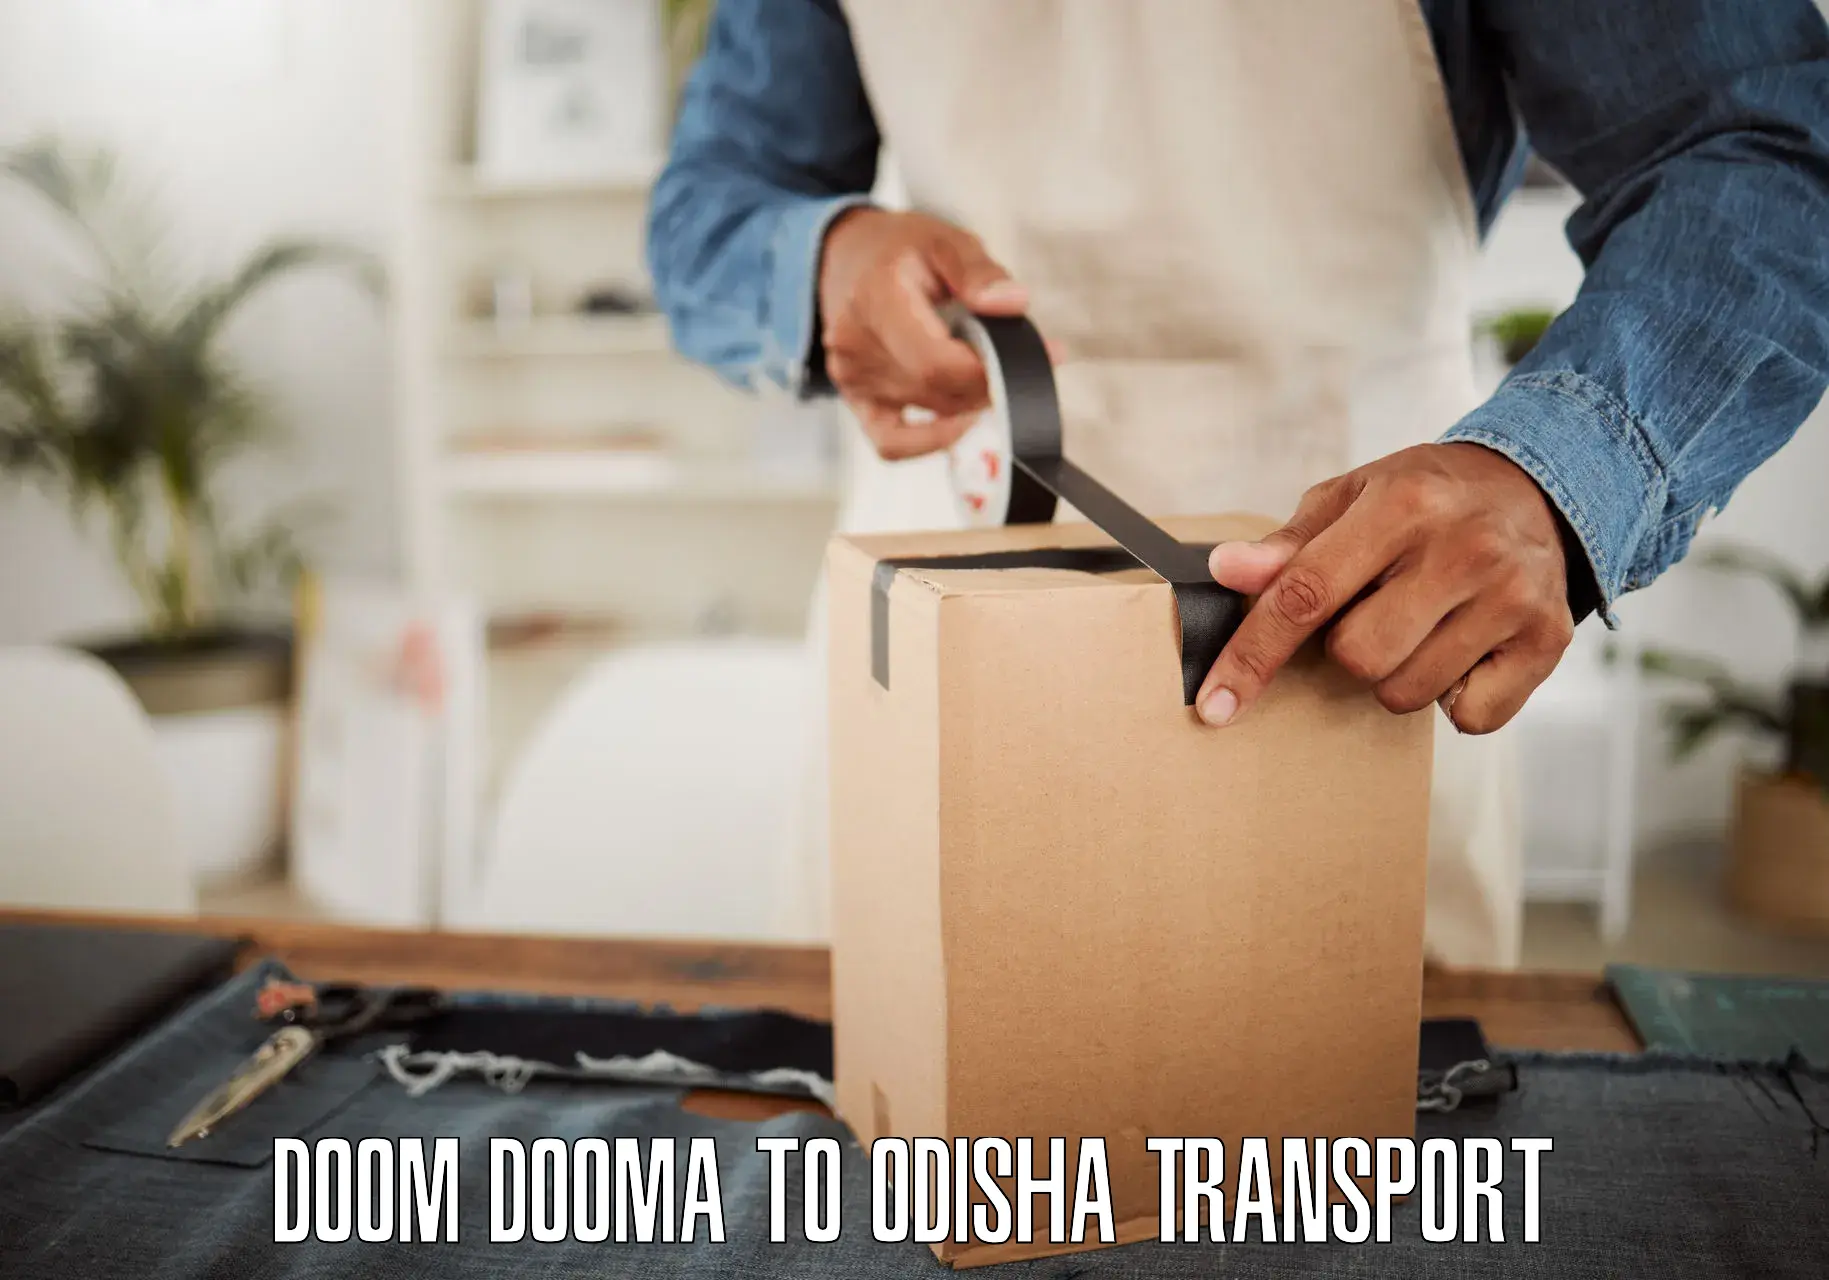 Daily transport service Doom Dooma to Sohela